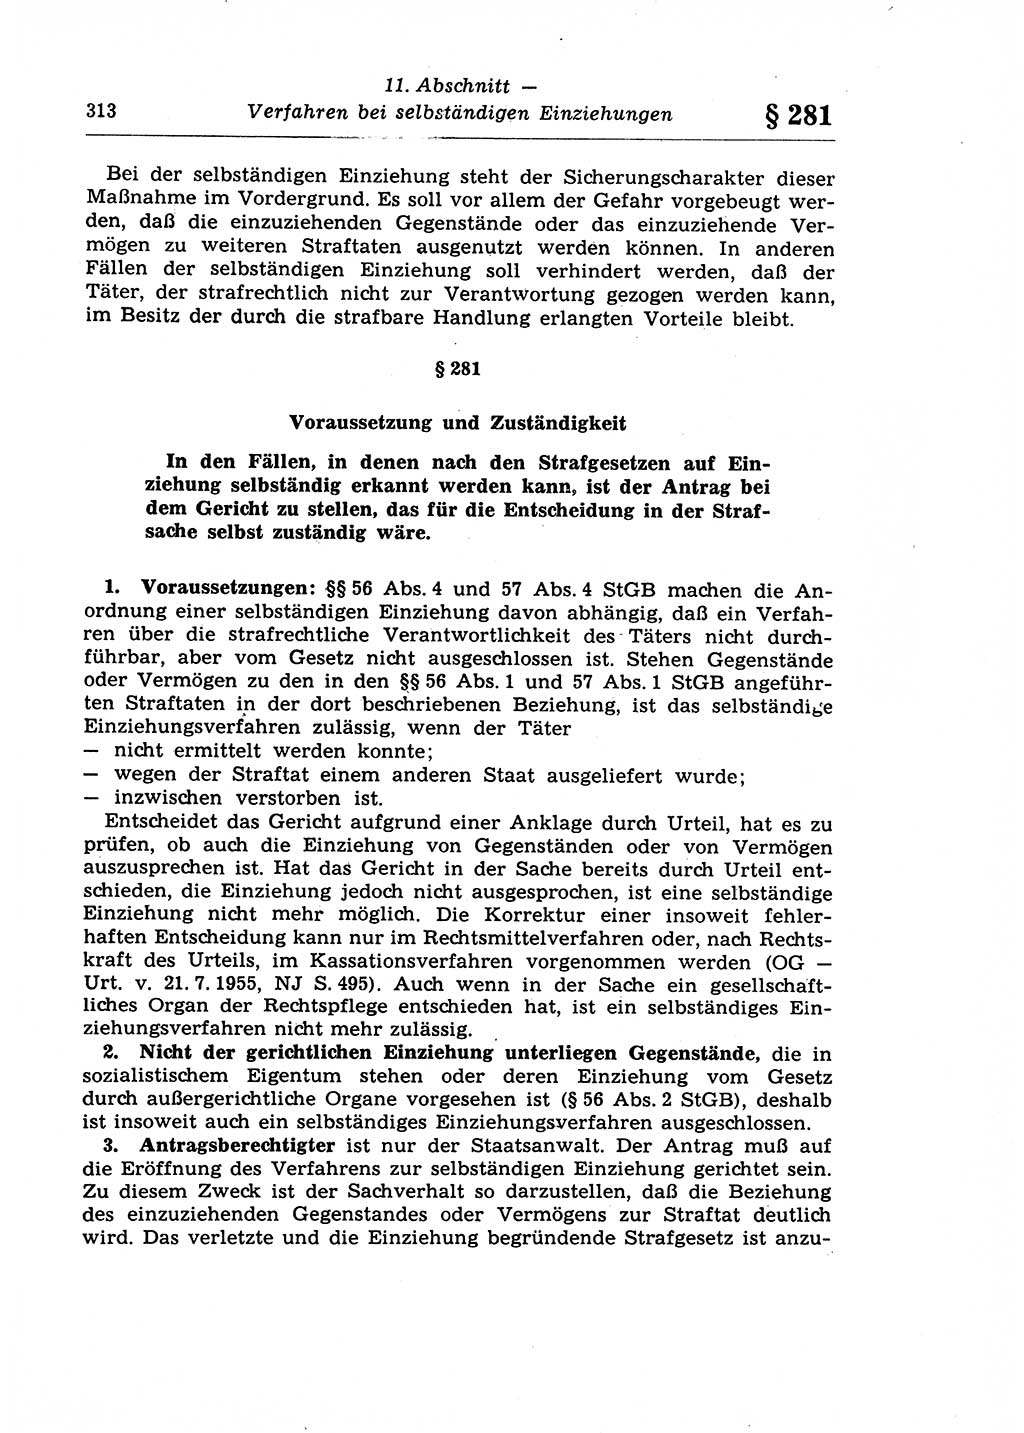 Strafprozeßrecht der DDR (Deutsche Demokratische Republik), Lehrkommentar zur Strafprozeßordnung (StPO) 1968, Seite 313 (Strafprozeßr. DDR Lehrkomm. StPO 19688, S. 313)